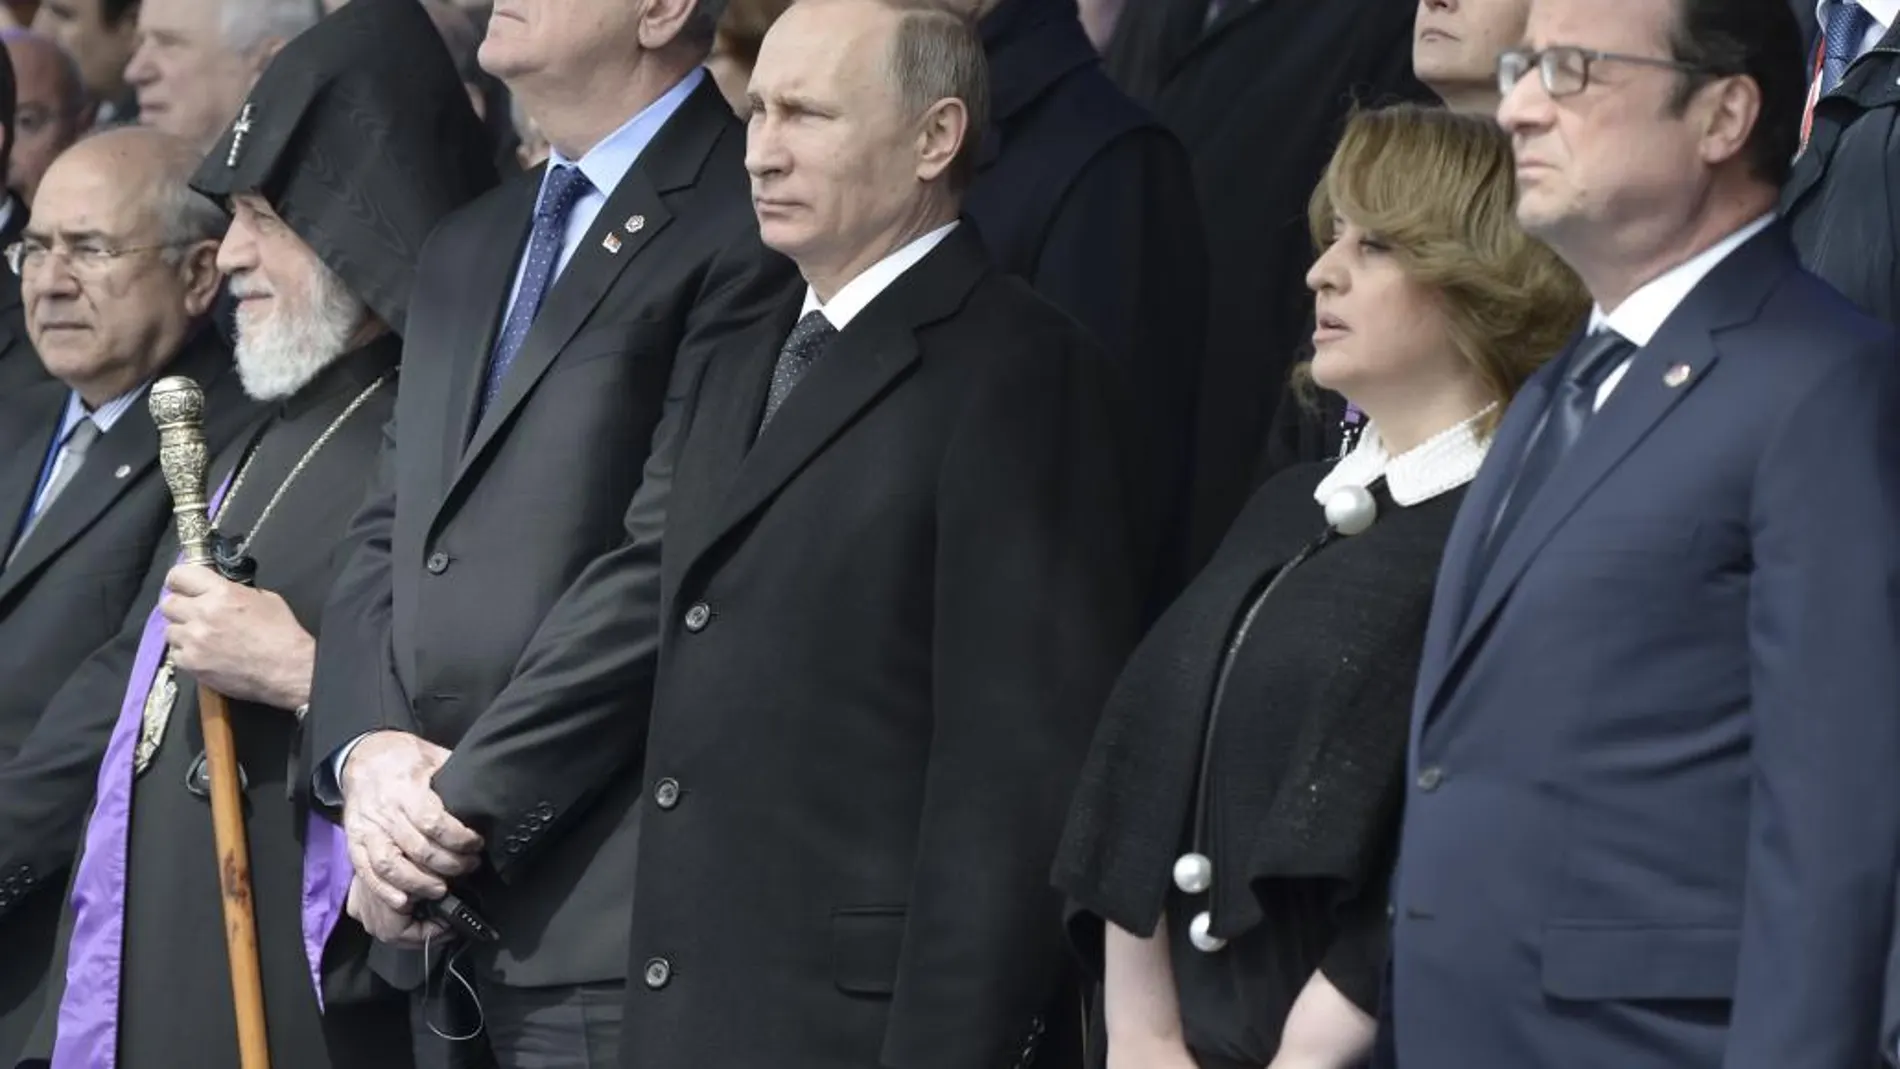 El presidente ruso, Vladimir Putin, el presidente serbio Tomislav Nikolic, el presidente francés François Hollande y otros asistentes a la ceremonia en Yerevan, Armenia